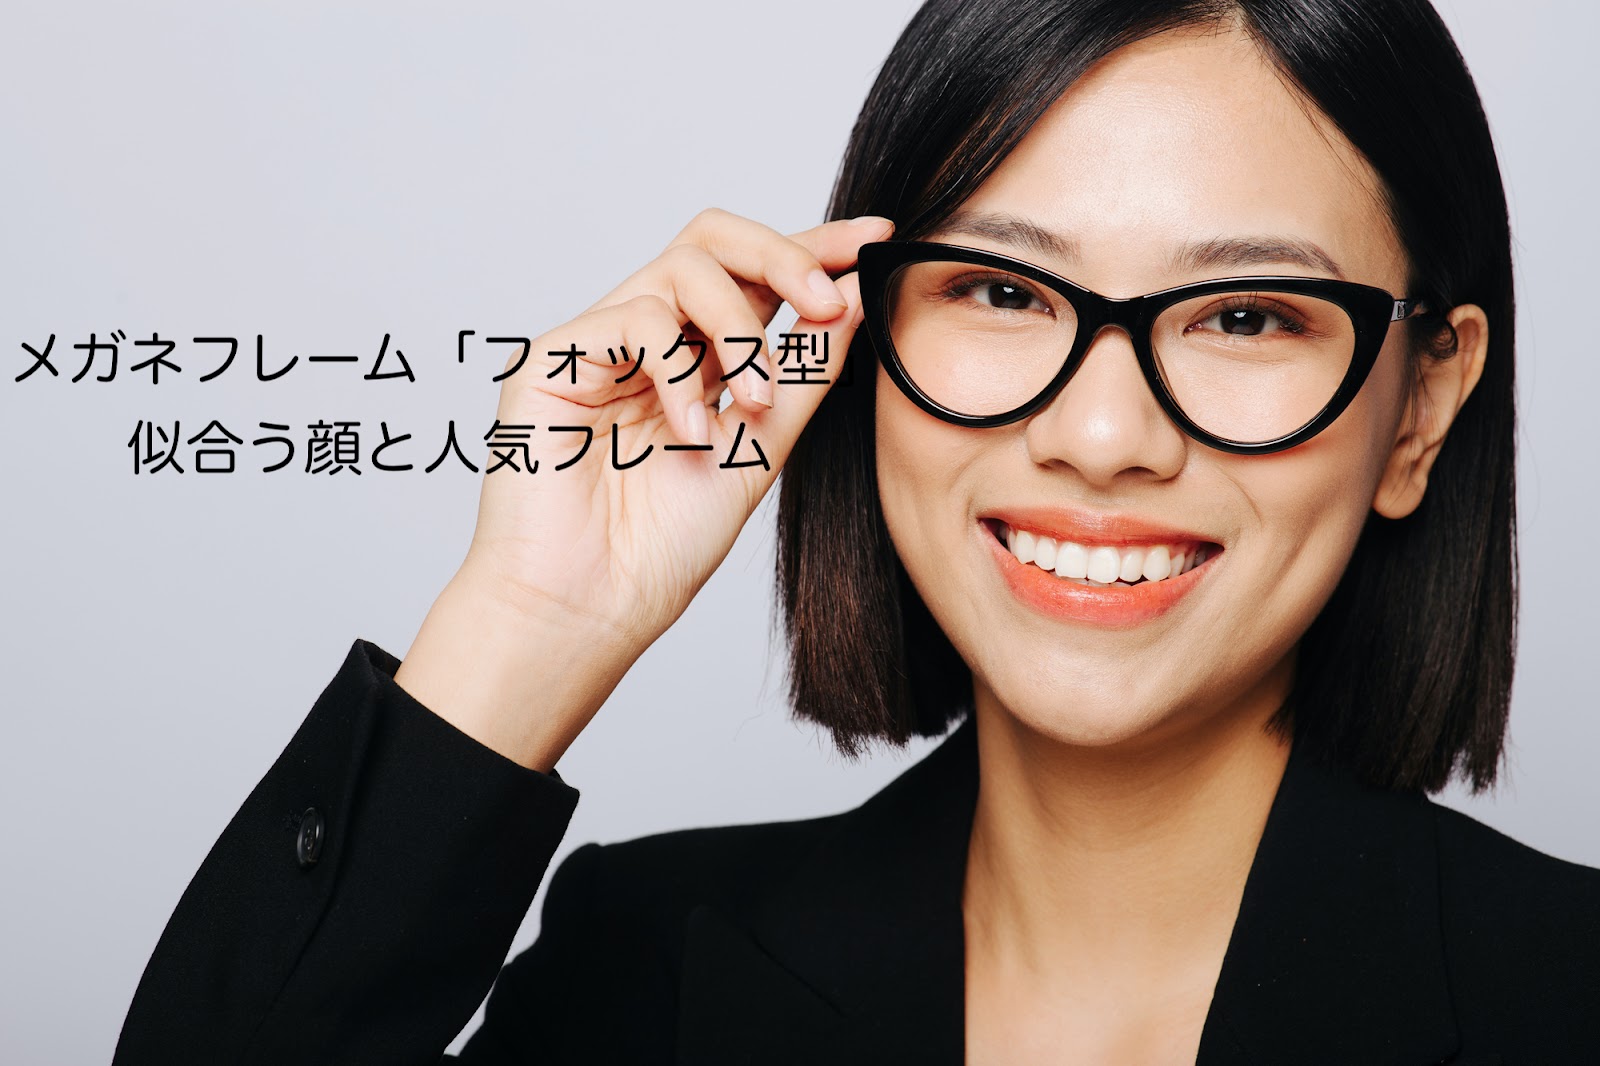 メガネフレーム「フォックス型」が似合う顔と人気フレーム4つ紹介 千里堂メガネ網走本店